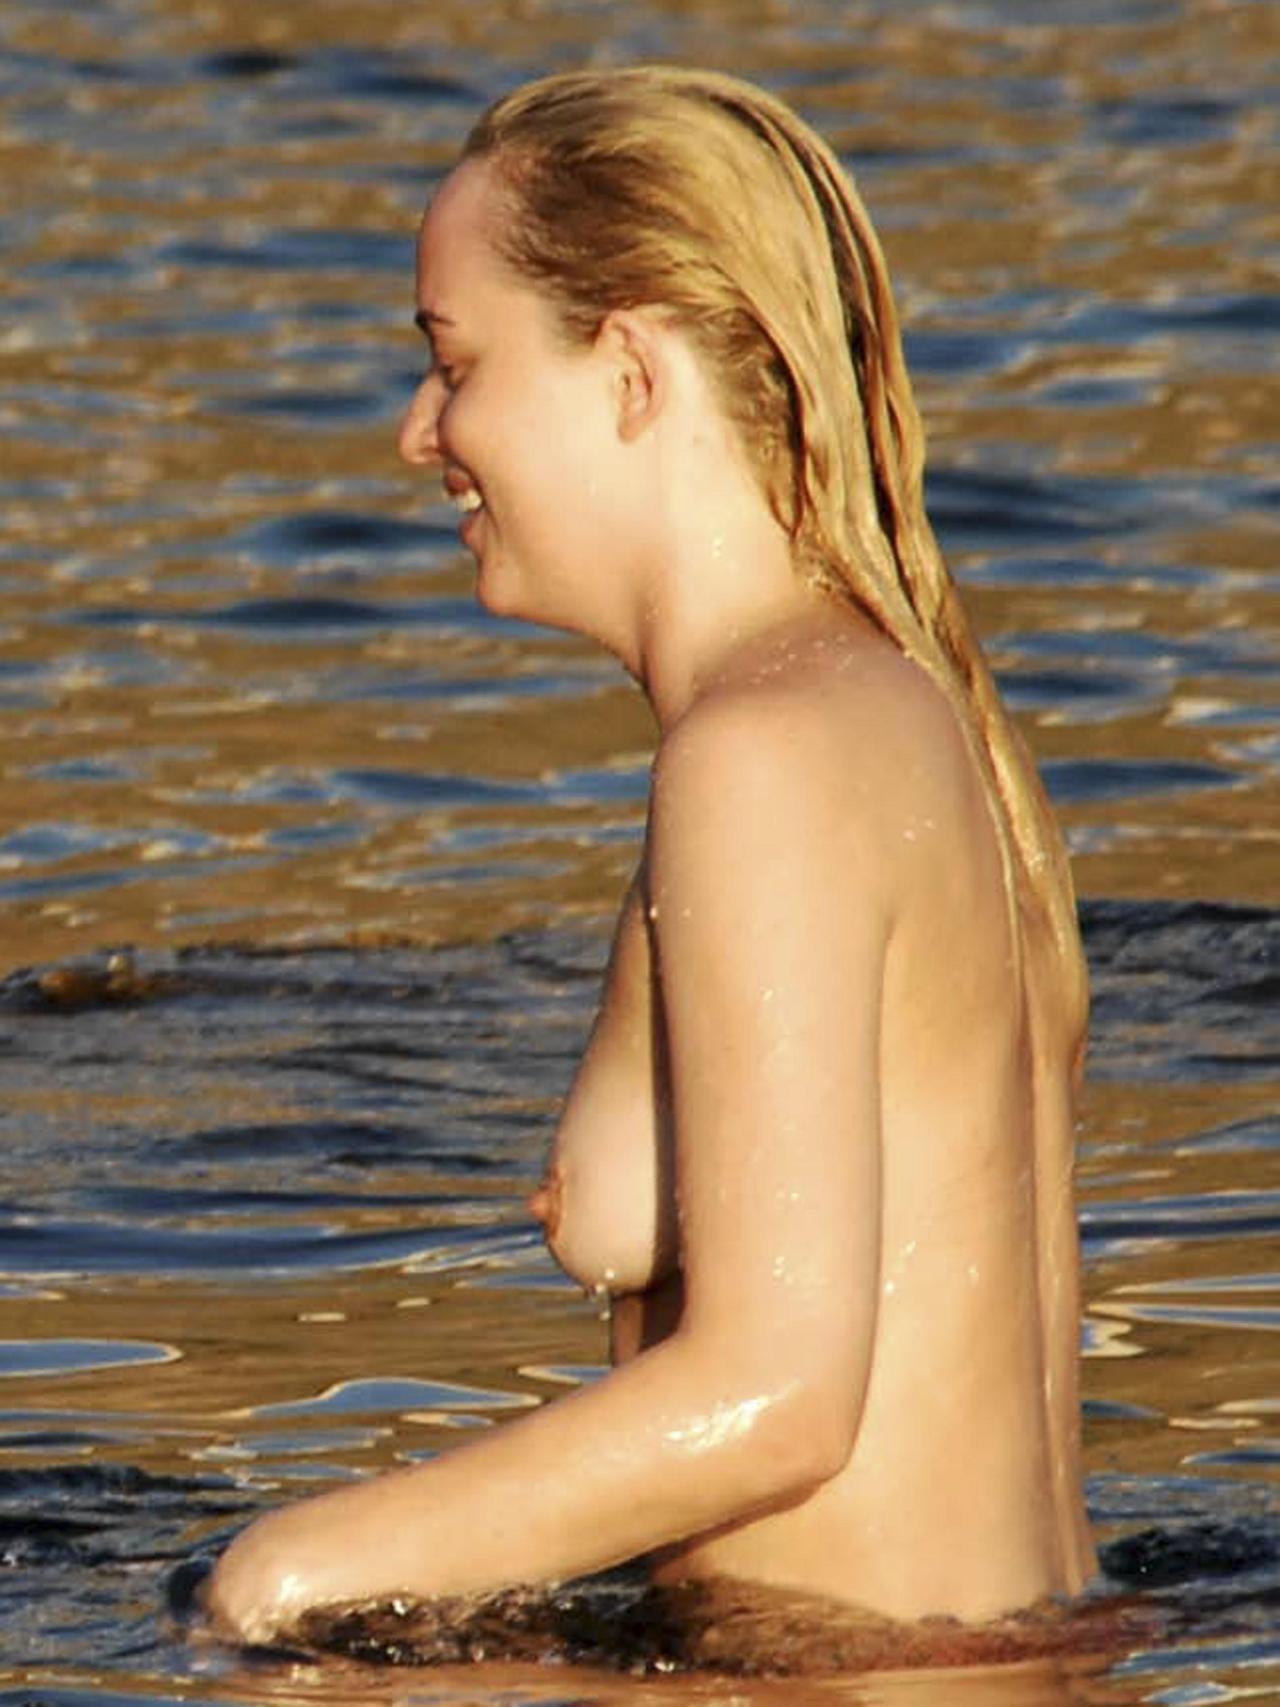 Dakota johnson nude naked